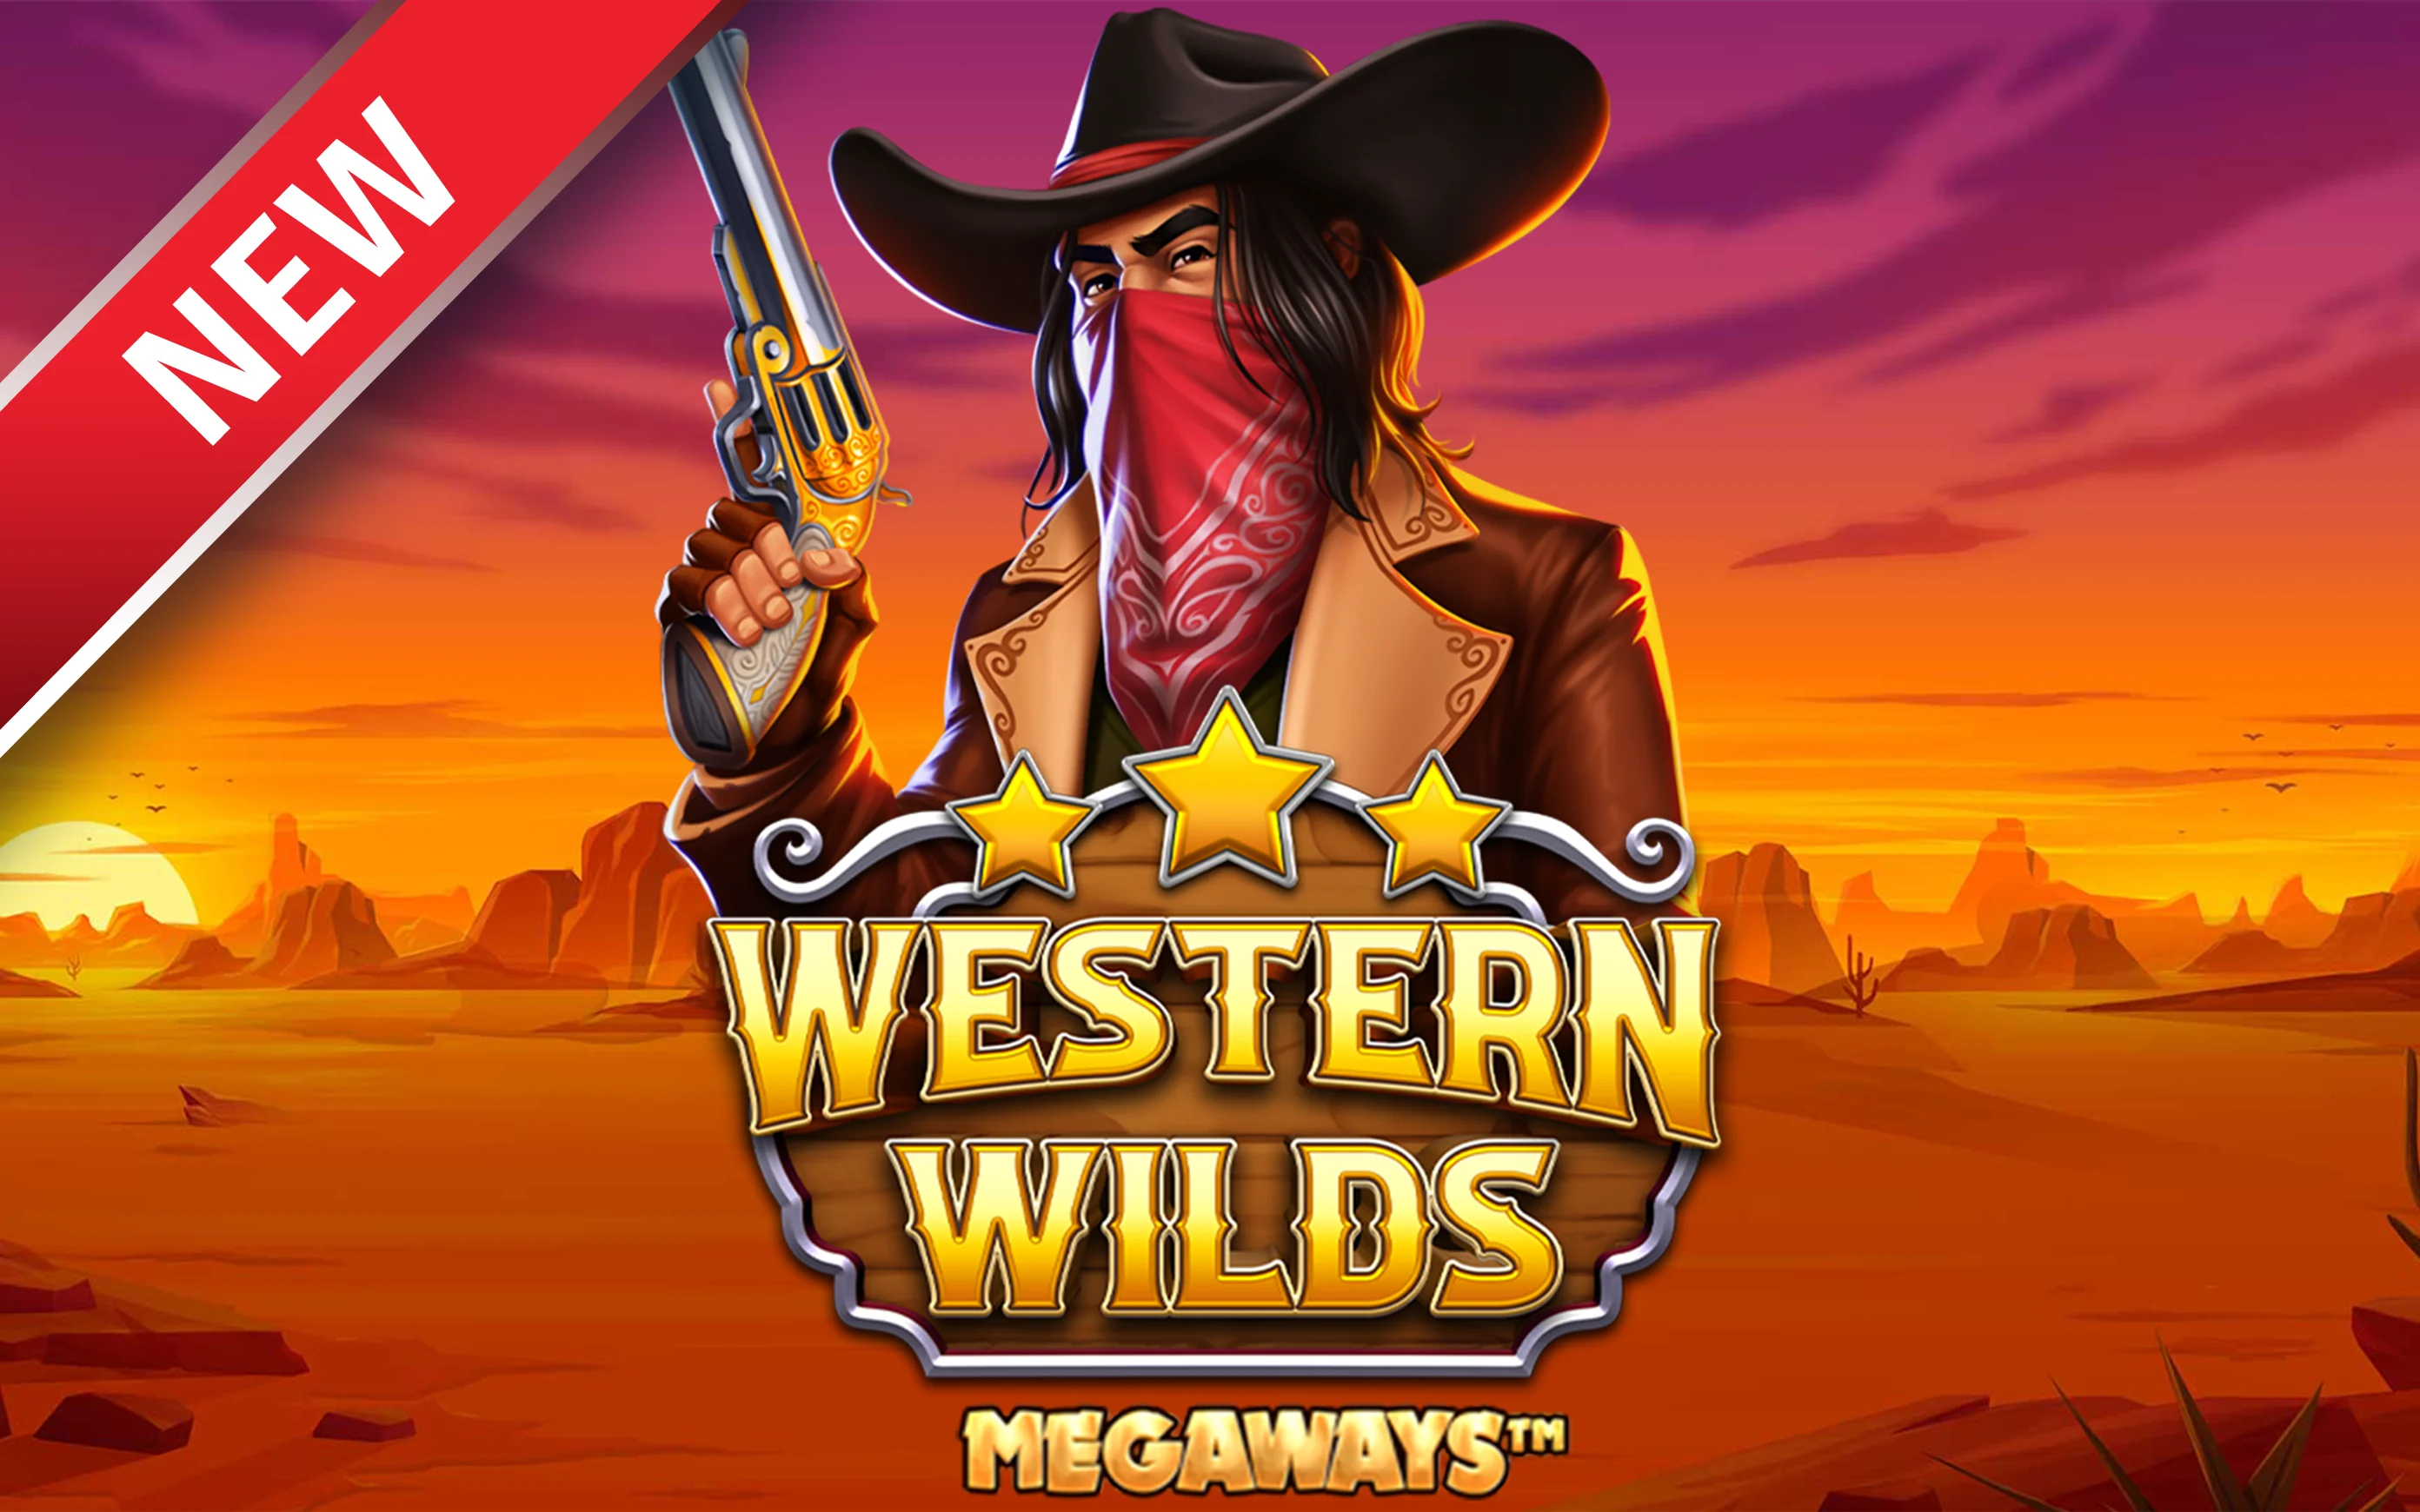 Zagraj w Western Wilds Megaways w kasynie online Starcasino.be